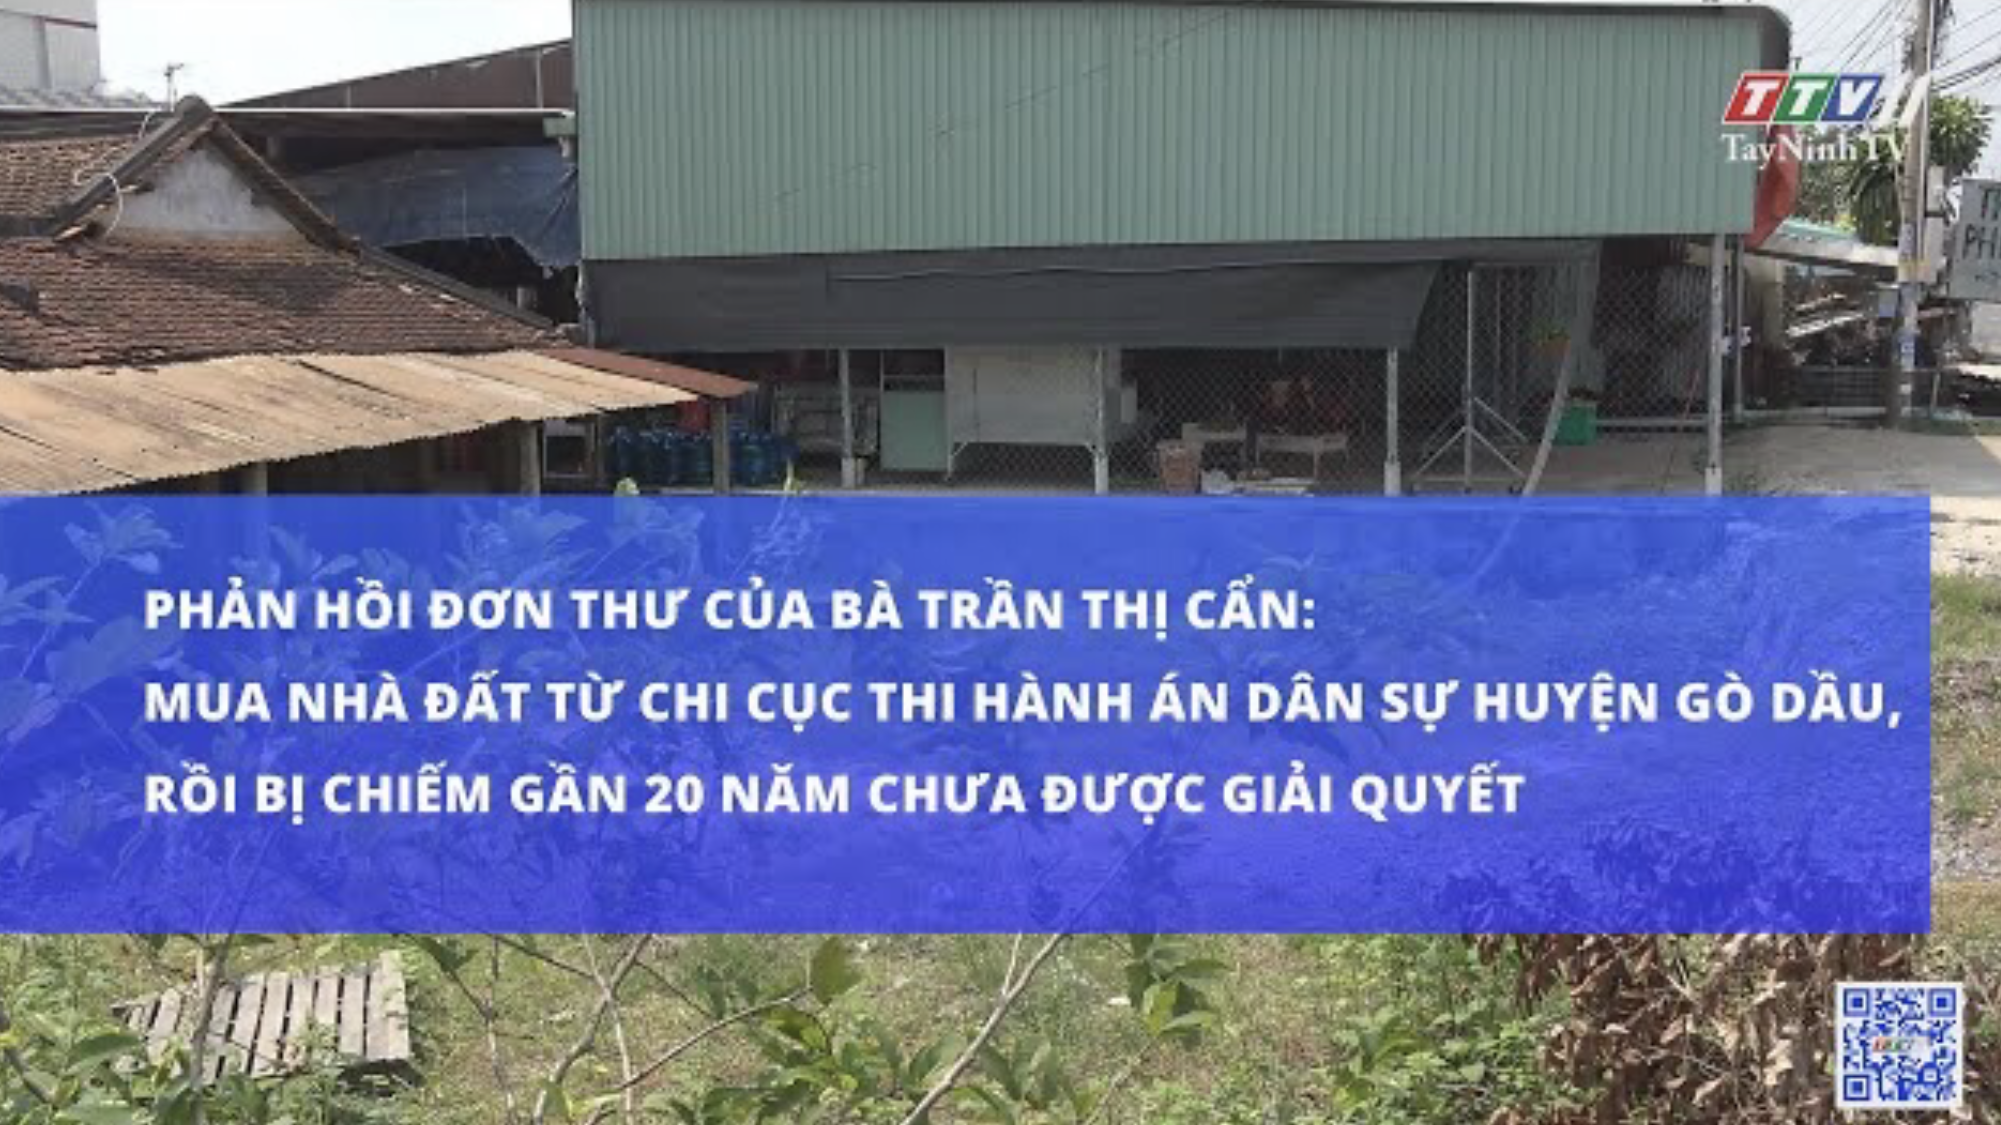 Phản hồi đơn thư của Bà Trần Thị Cẩn | Hộp thư truyền hình | TayNinhTV